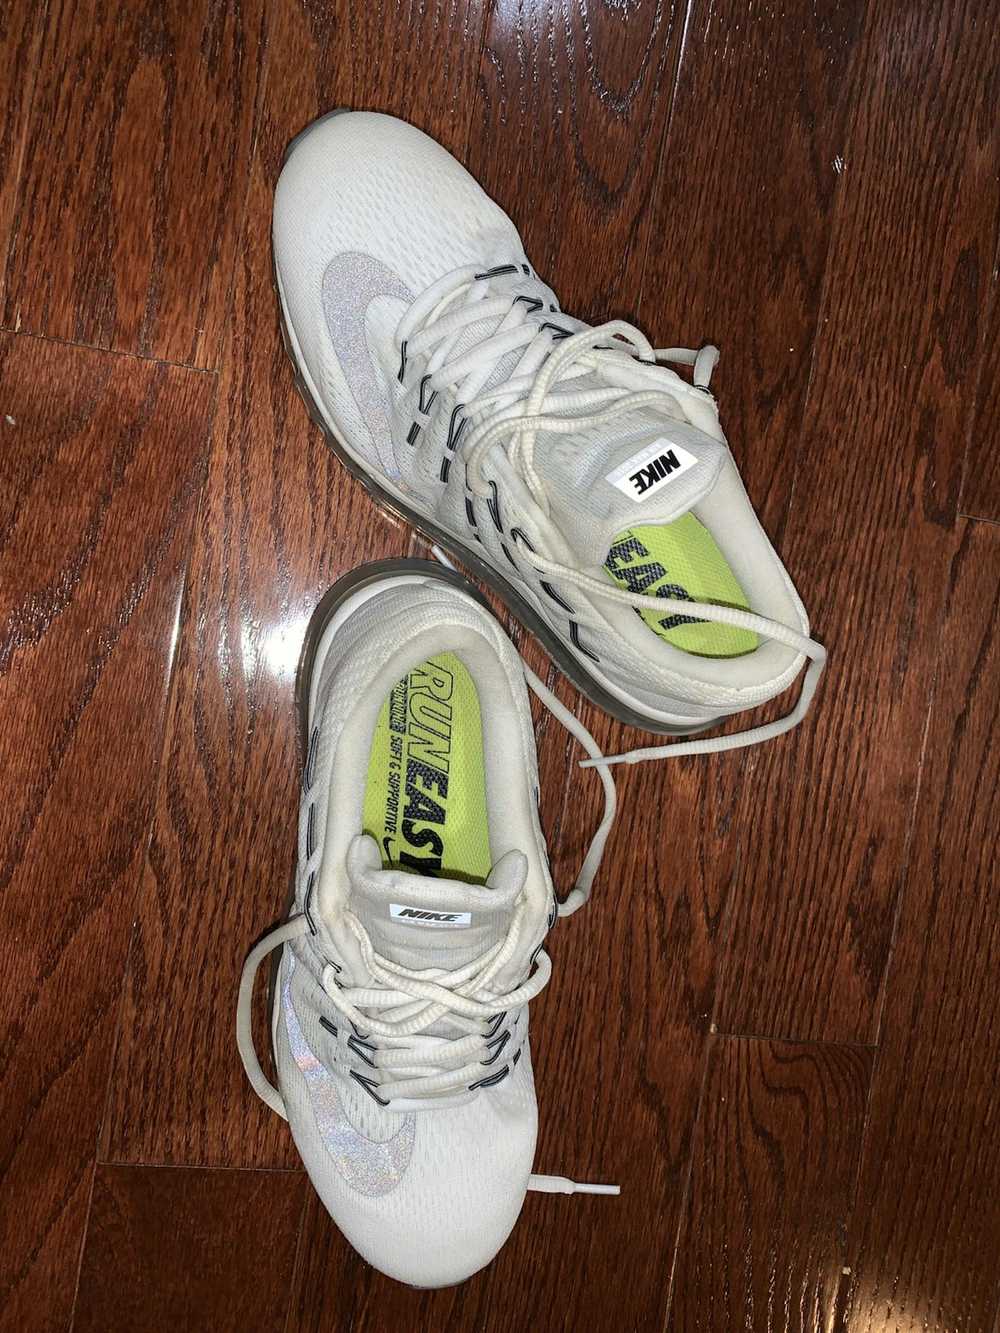 Nike Nike AirMax Running Shoe 2016 - image 2